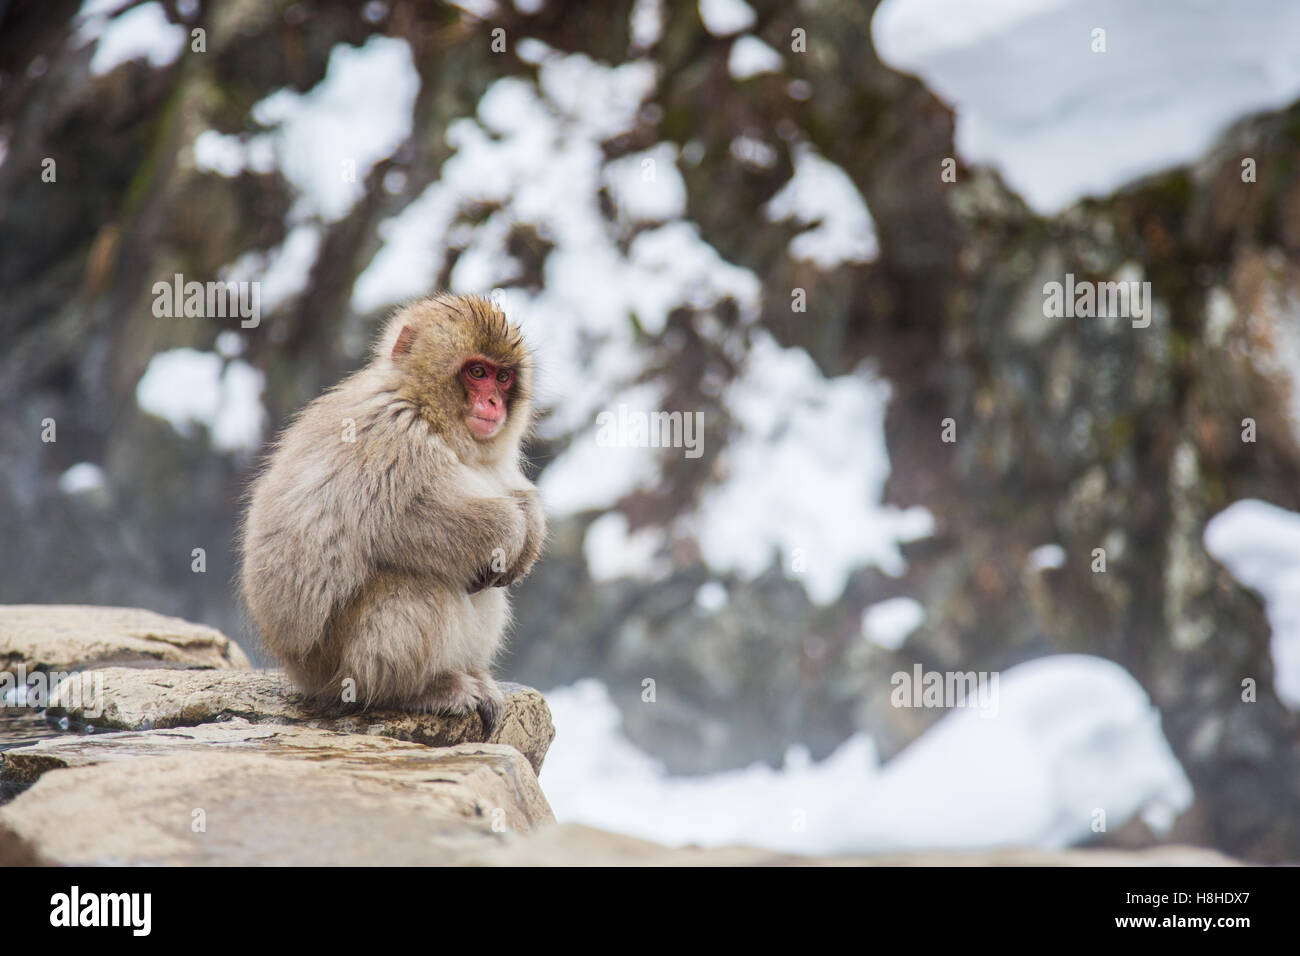 Snow monkey at a natural onsen (hot spring), located in Jigokudani Park, Yudanaka. Nagano Japan. Stock Photo